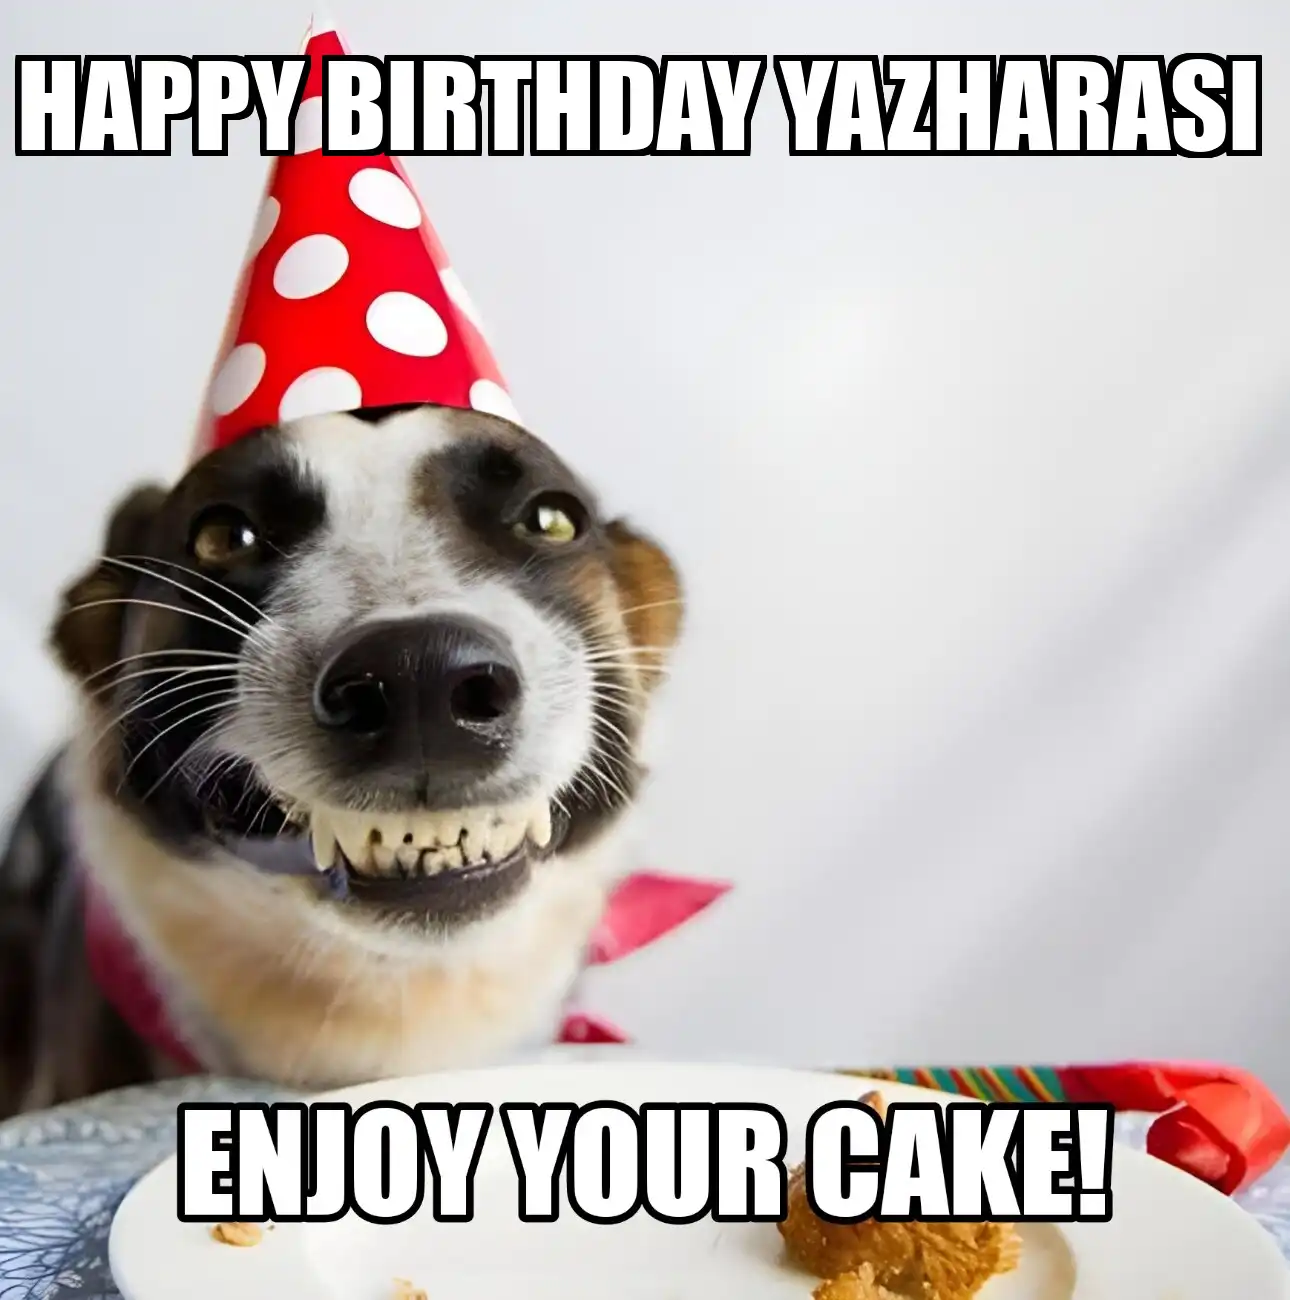 Happy Birthday Yazharasi Enjoy Your Cake Dog Meme